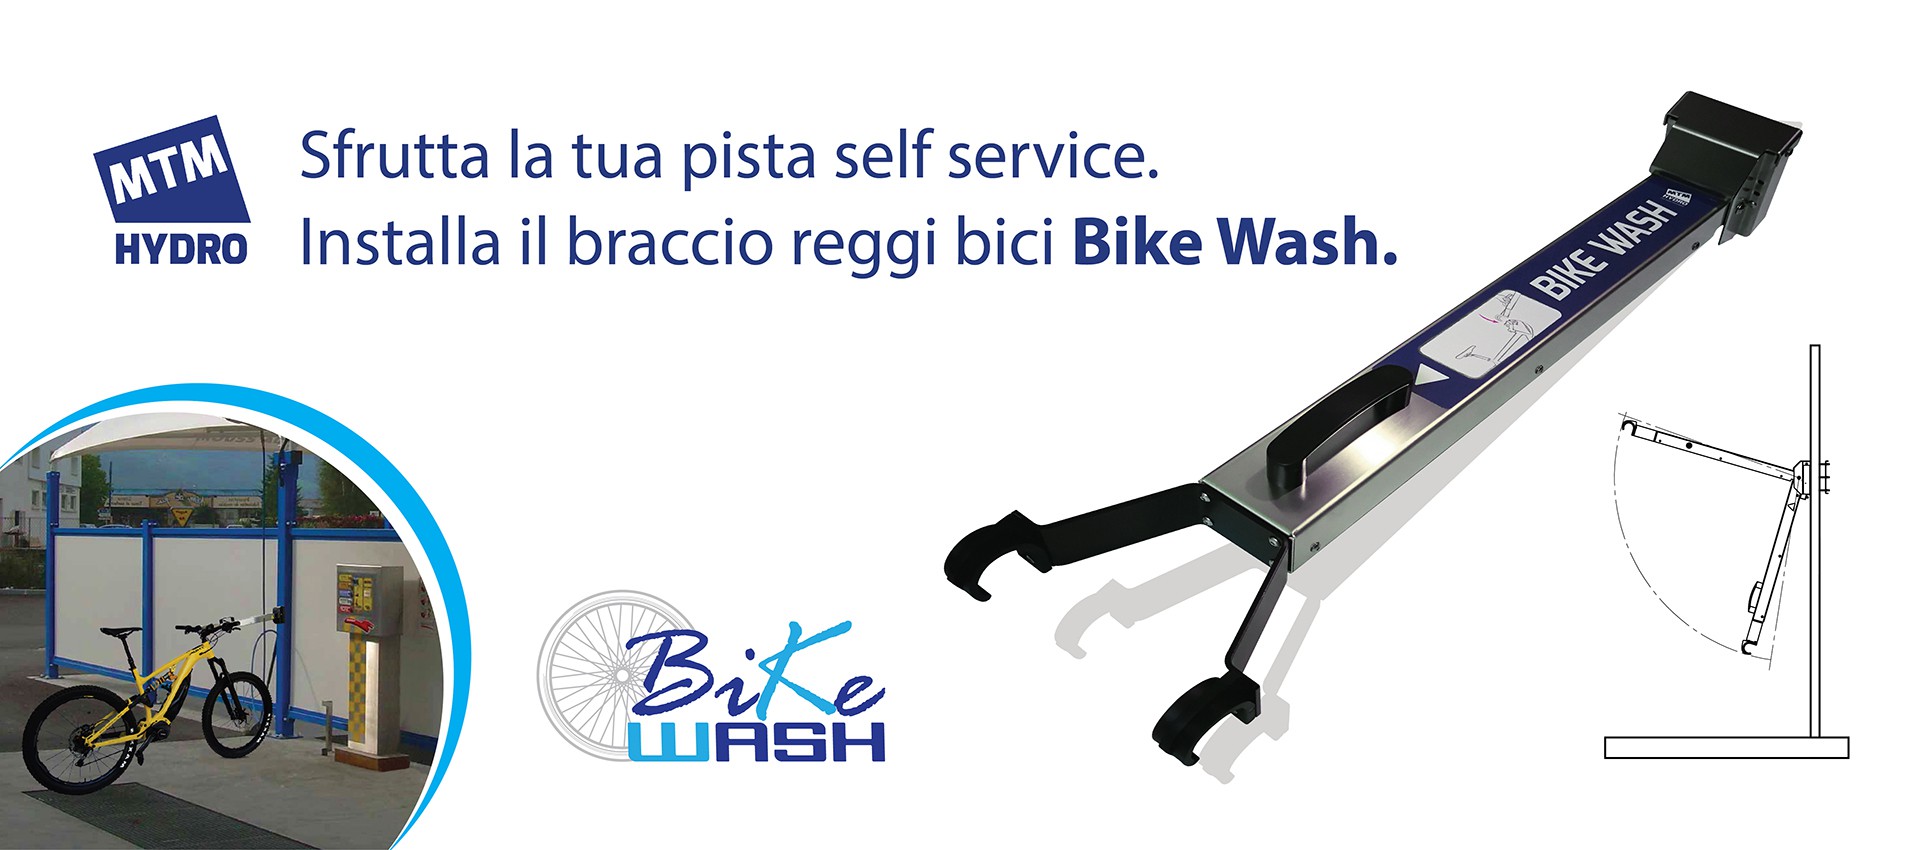 Bike Wash